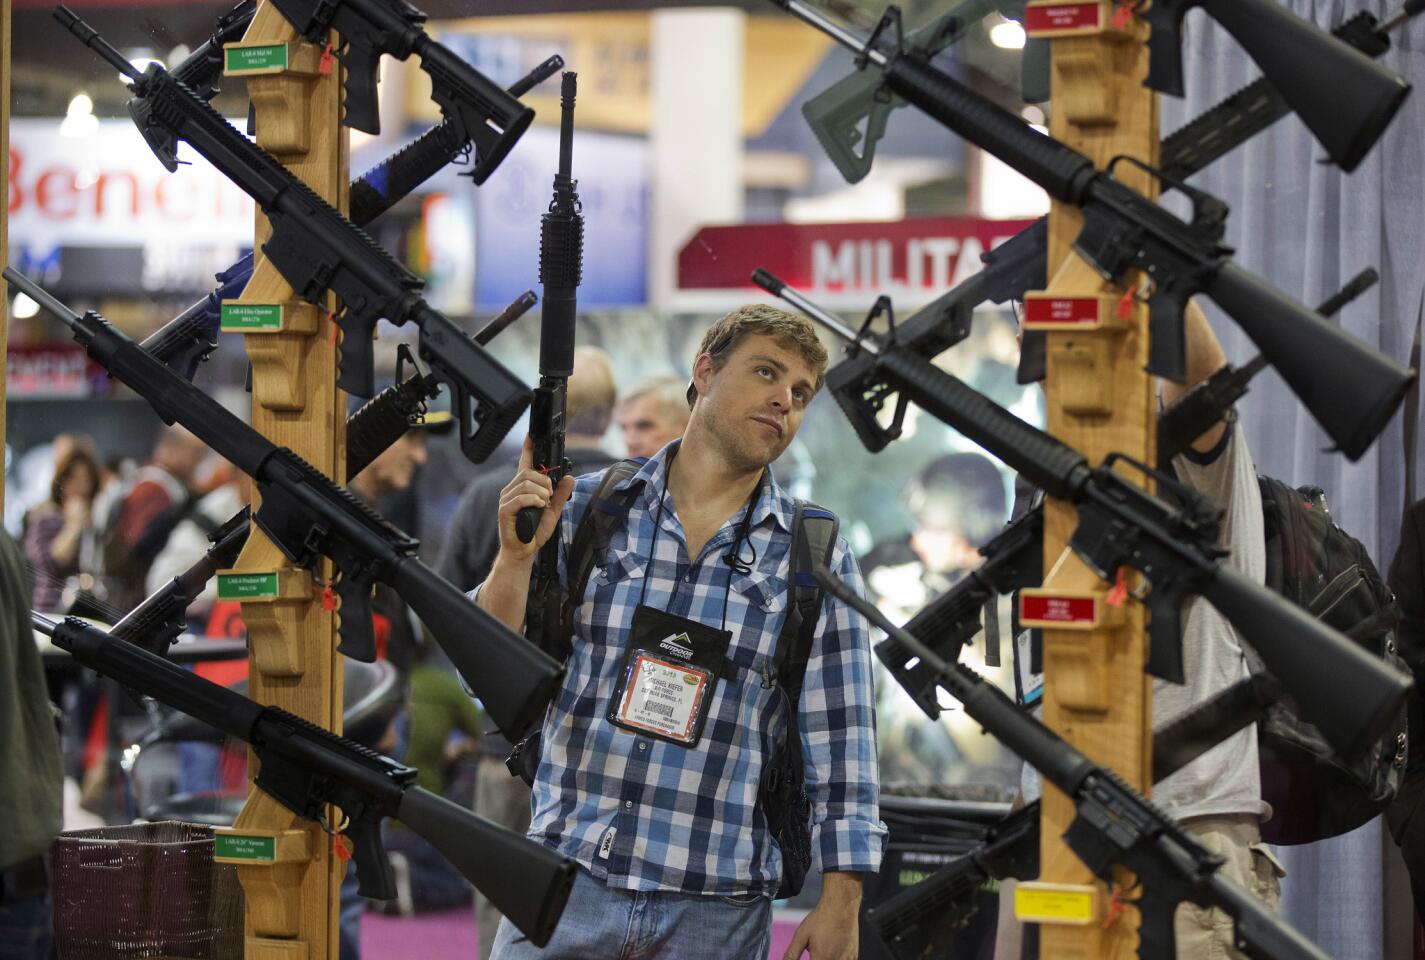 Gun trade shows continue